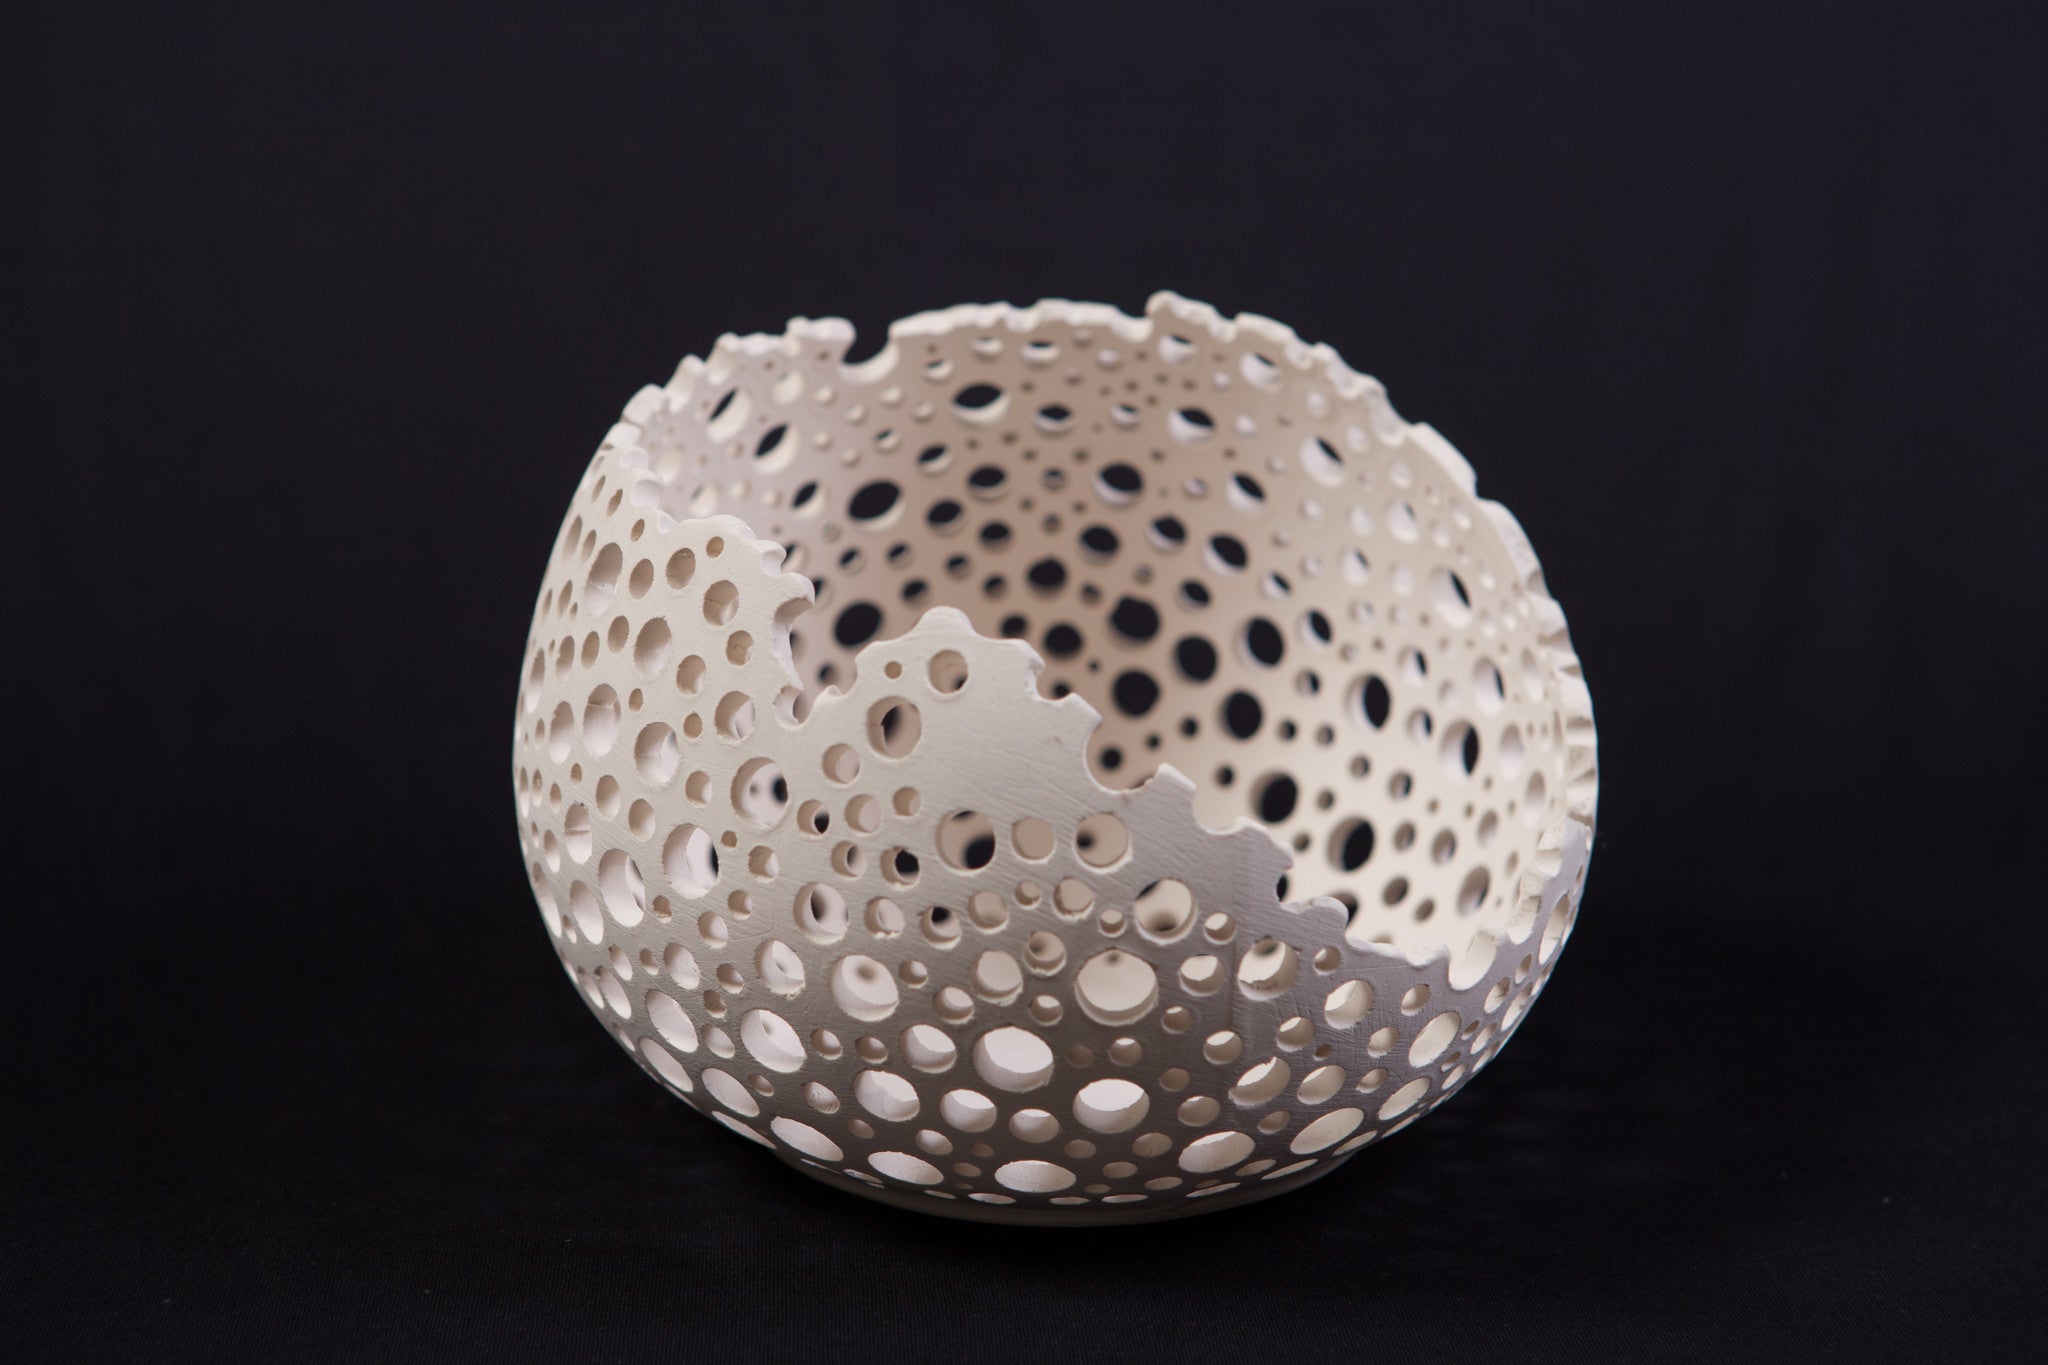 Medium-Size White Unglazed Ceramic "Living Edge" Bowl with Hole Pattern